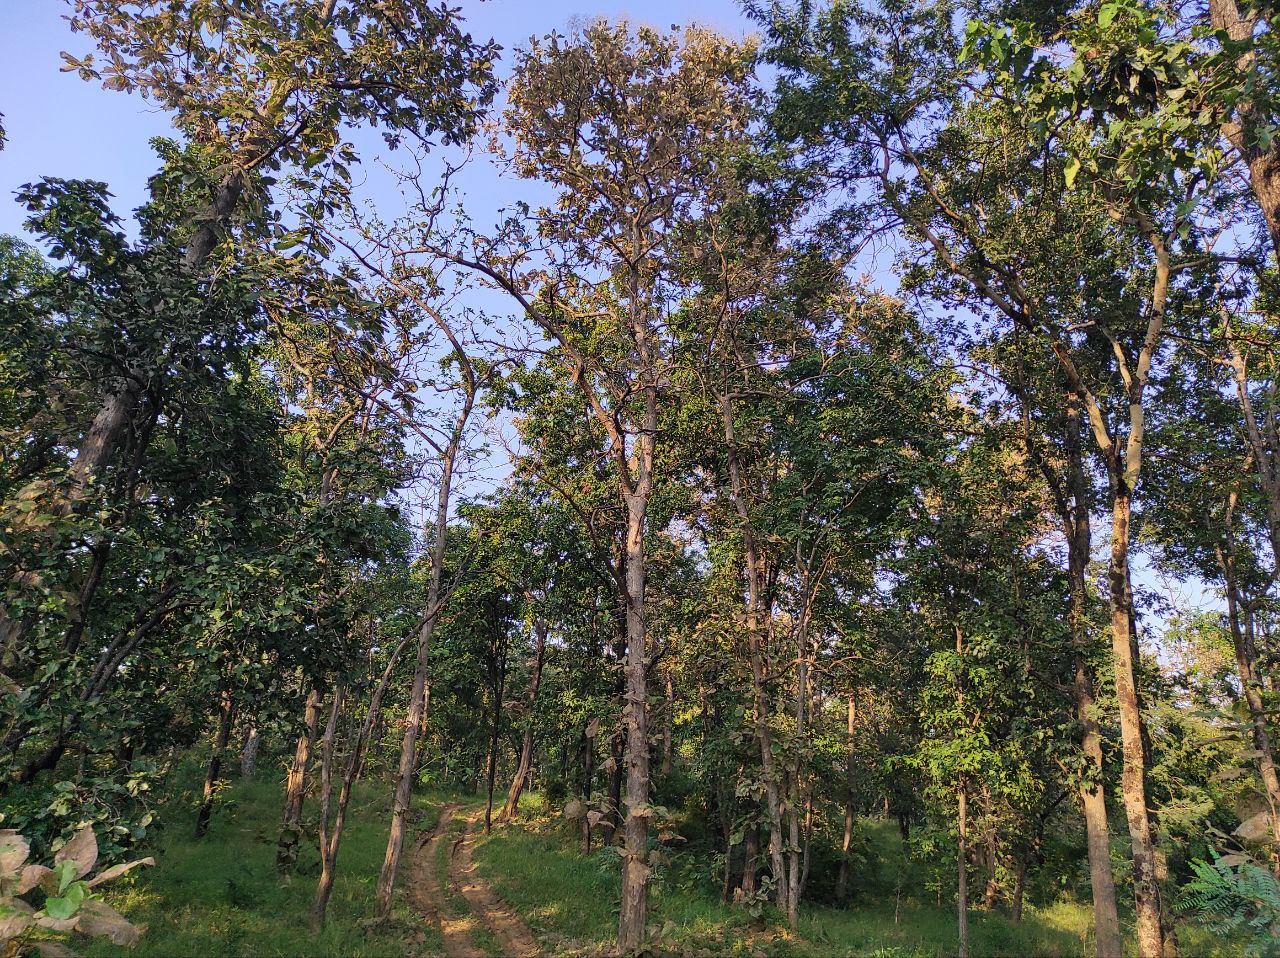  हेमाराम का दावा, जालौर और करौली के वन क्षेत्र में नहीं आई कमी